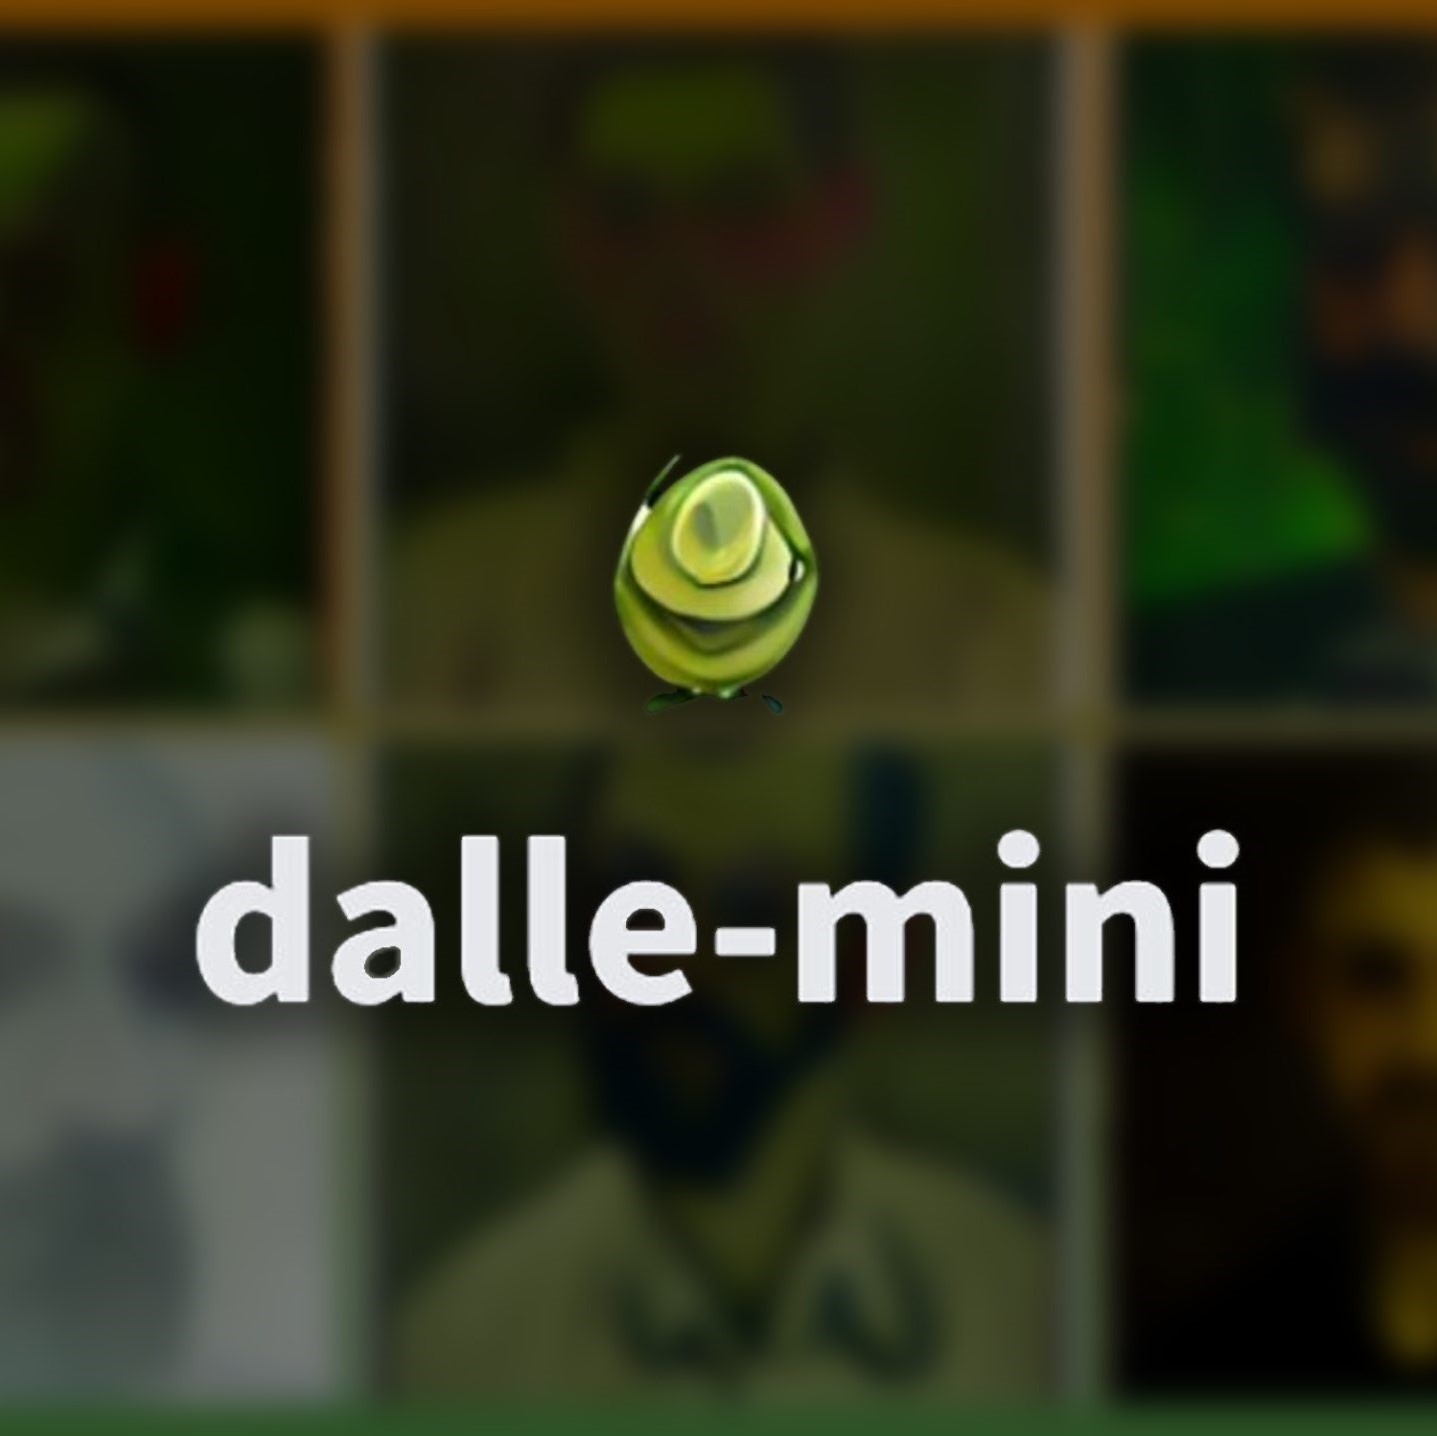 Dall E-mini: Inteligencia Artificial libre, gratuita y 100% online